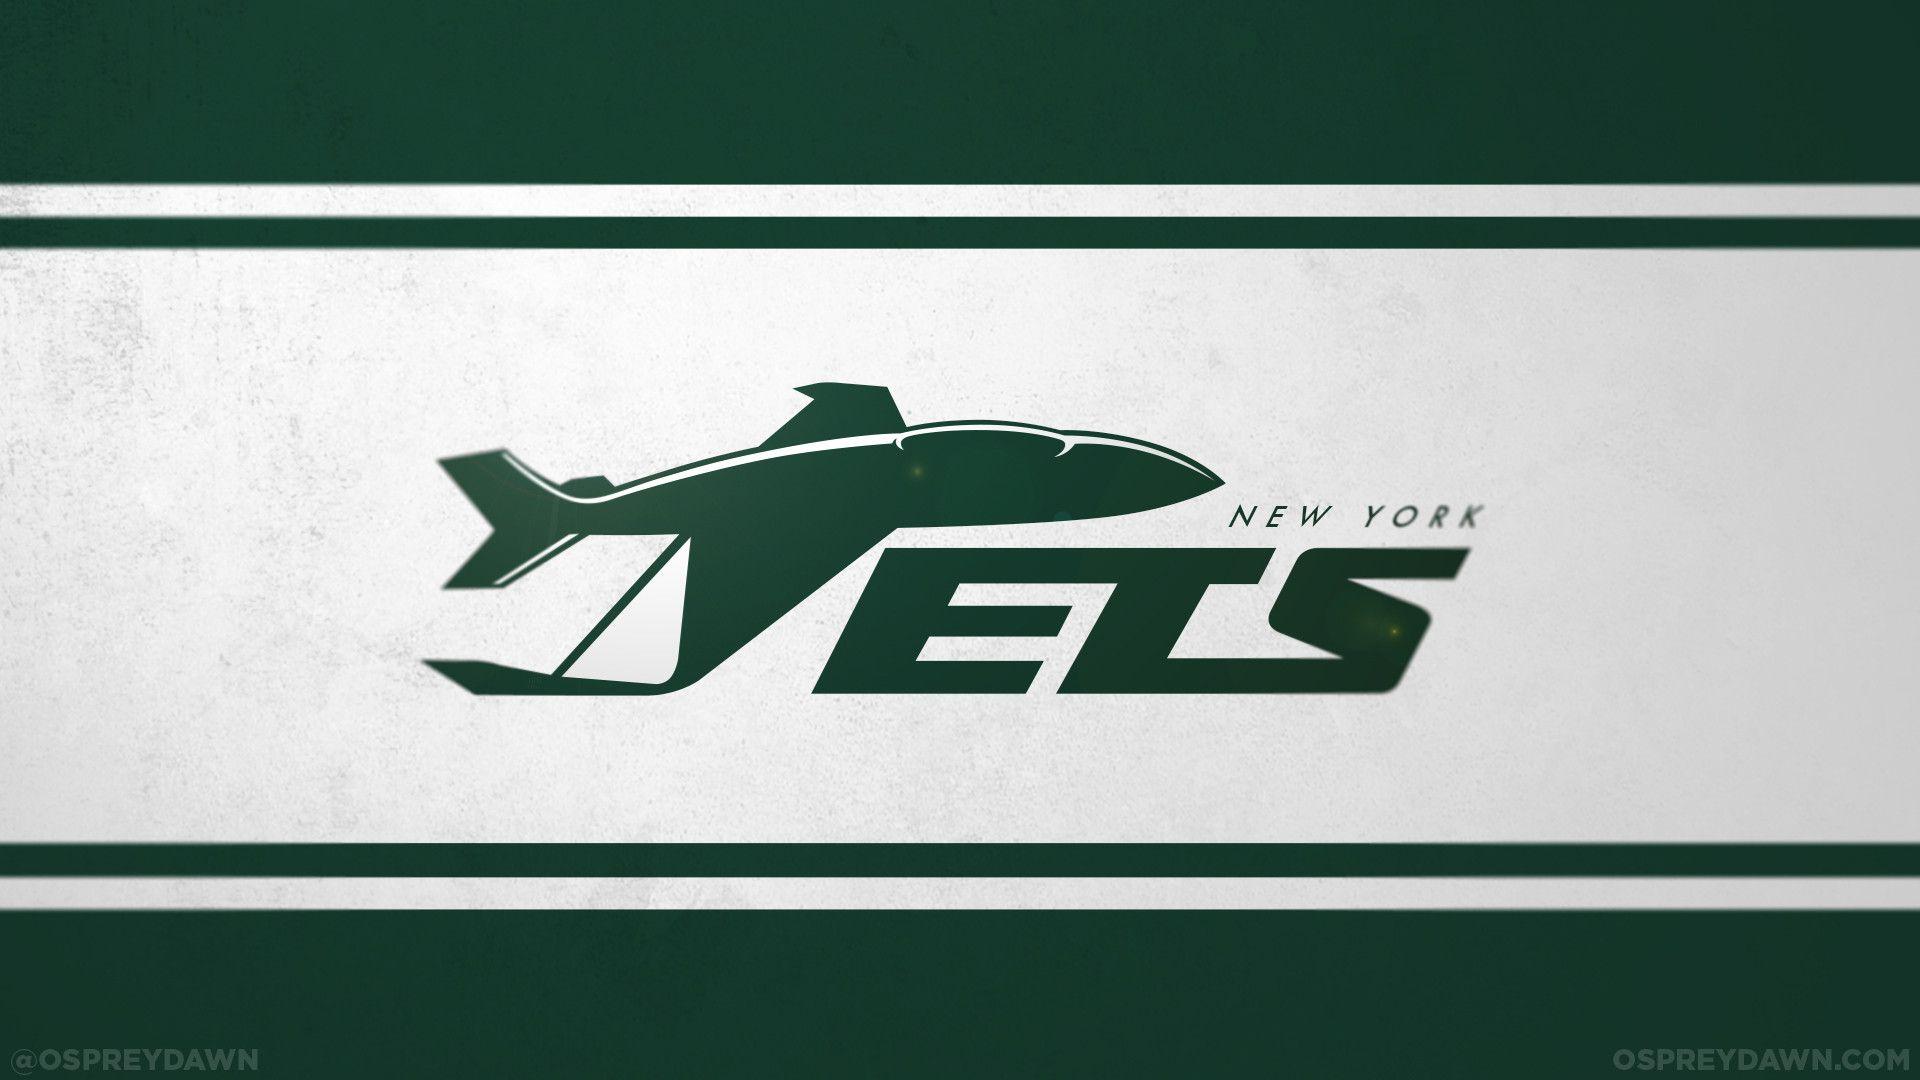 New York Jets New Logo - NY Jets logo